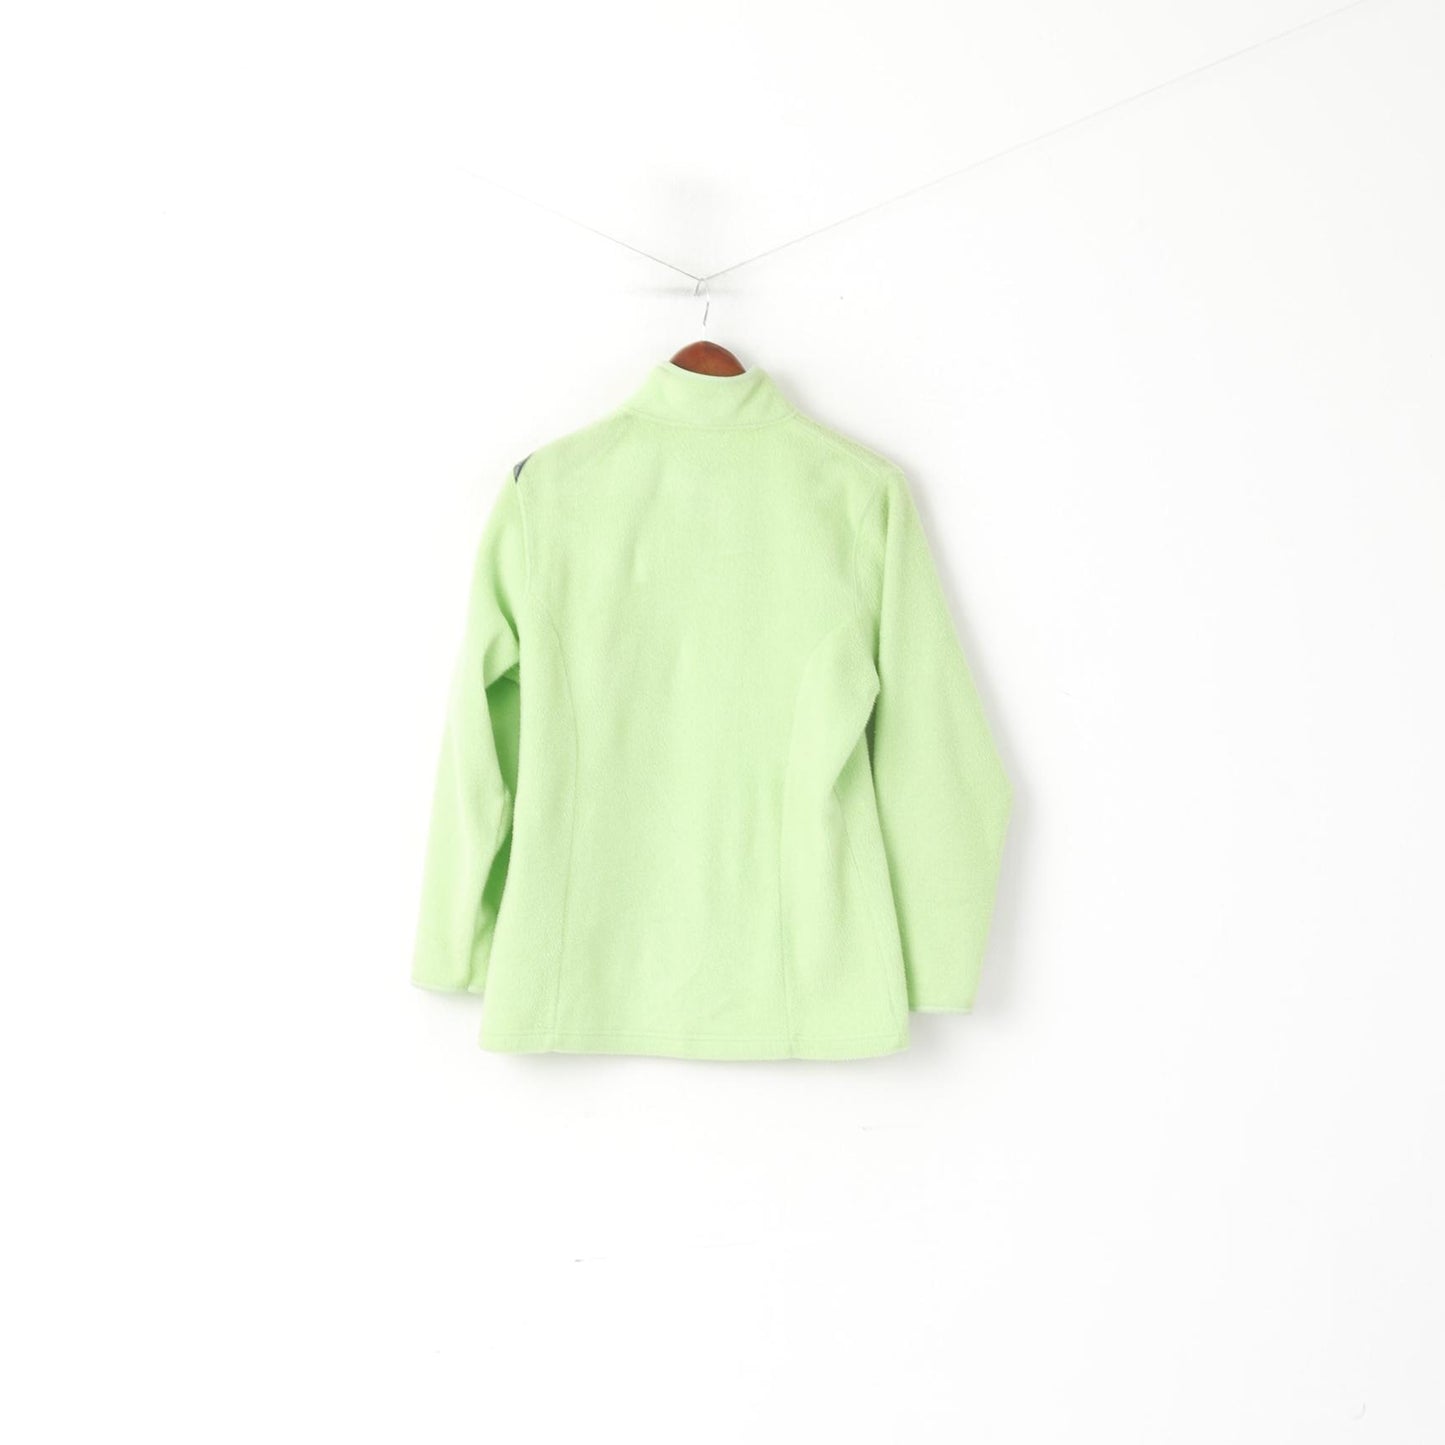 Speedo Women S Fleece Top Lime Vintage Full Zip Sportswear Sweatshirt Top